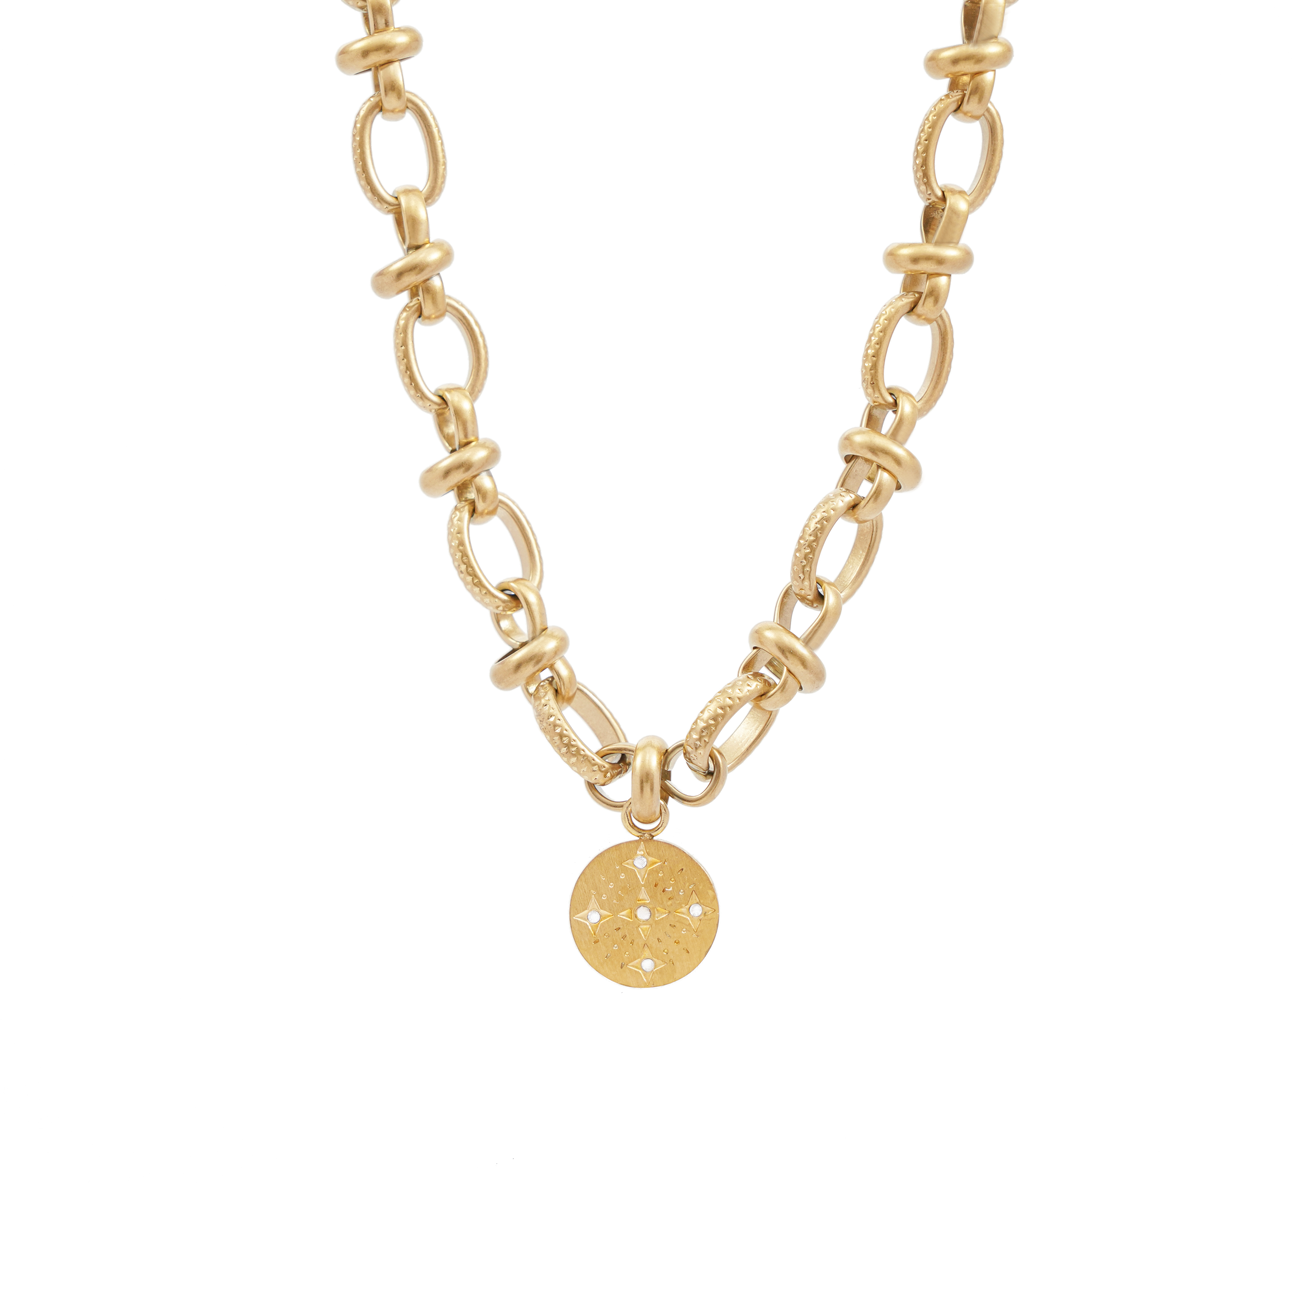 Agnes chain necklace